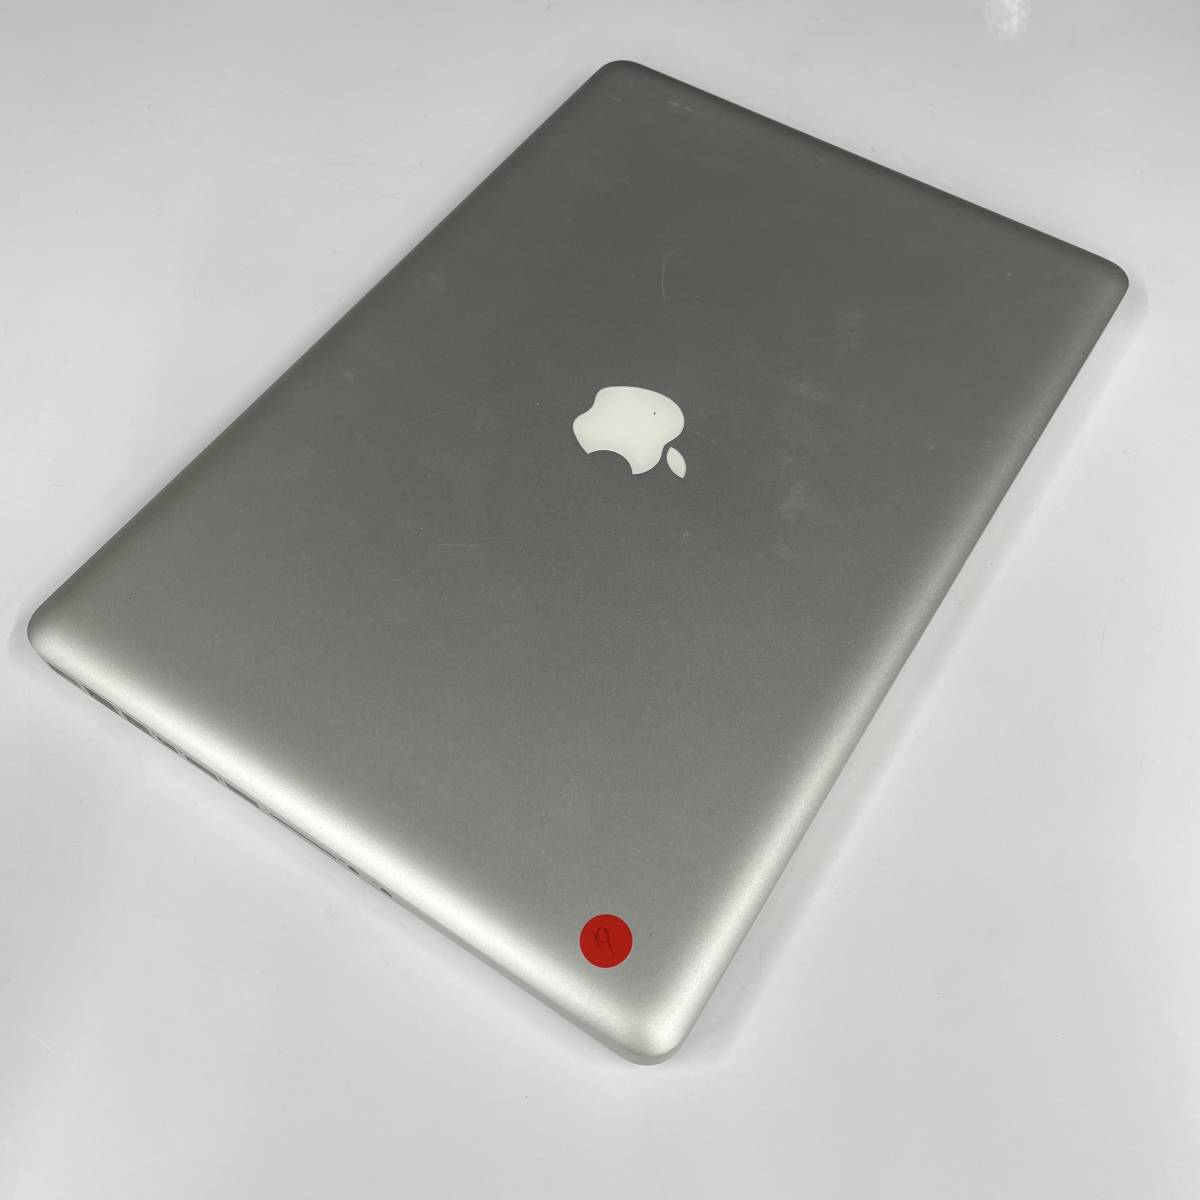 新型MacBook Pro 日本では円安の影響続く（山口健太） - エキスパート - Yahoo!ニュース